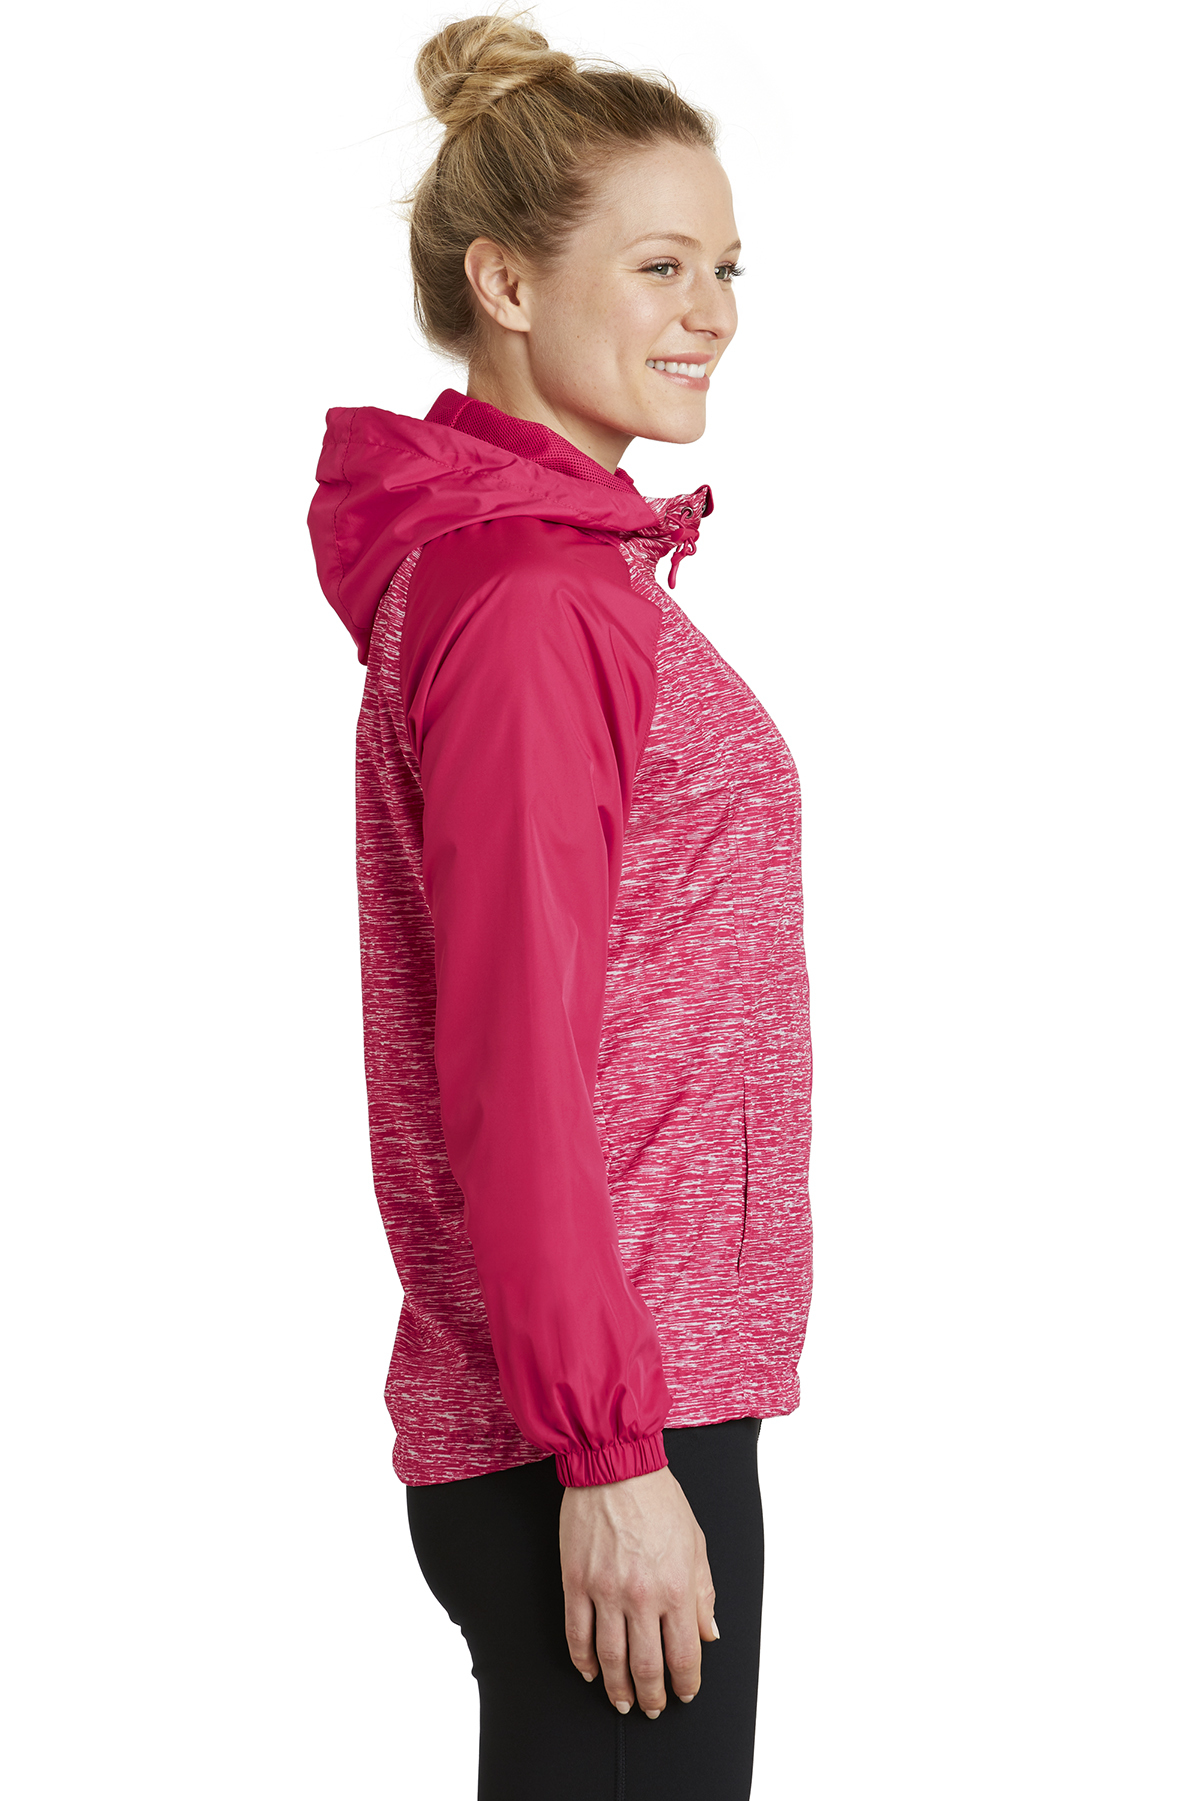 Raglan Heather | Jacket Product Sport-Tek | Wind Sport-Tek Hooded Colorblock Ladies